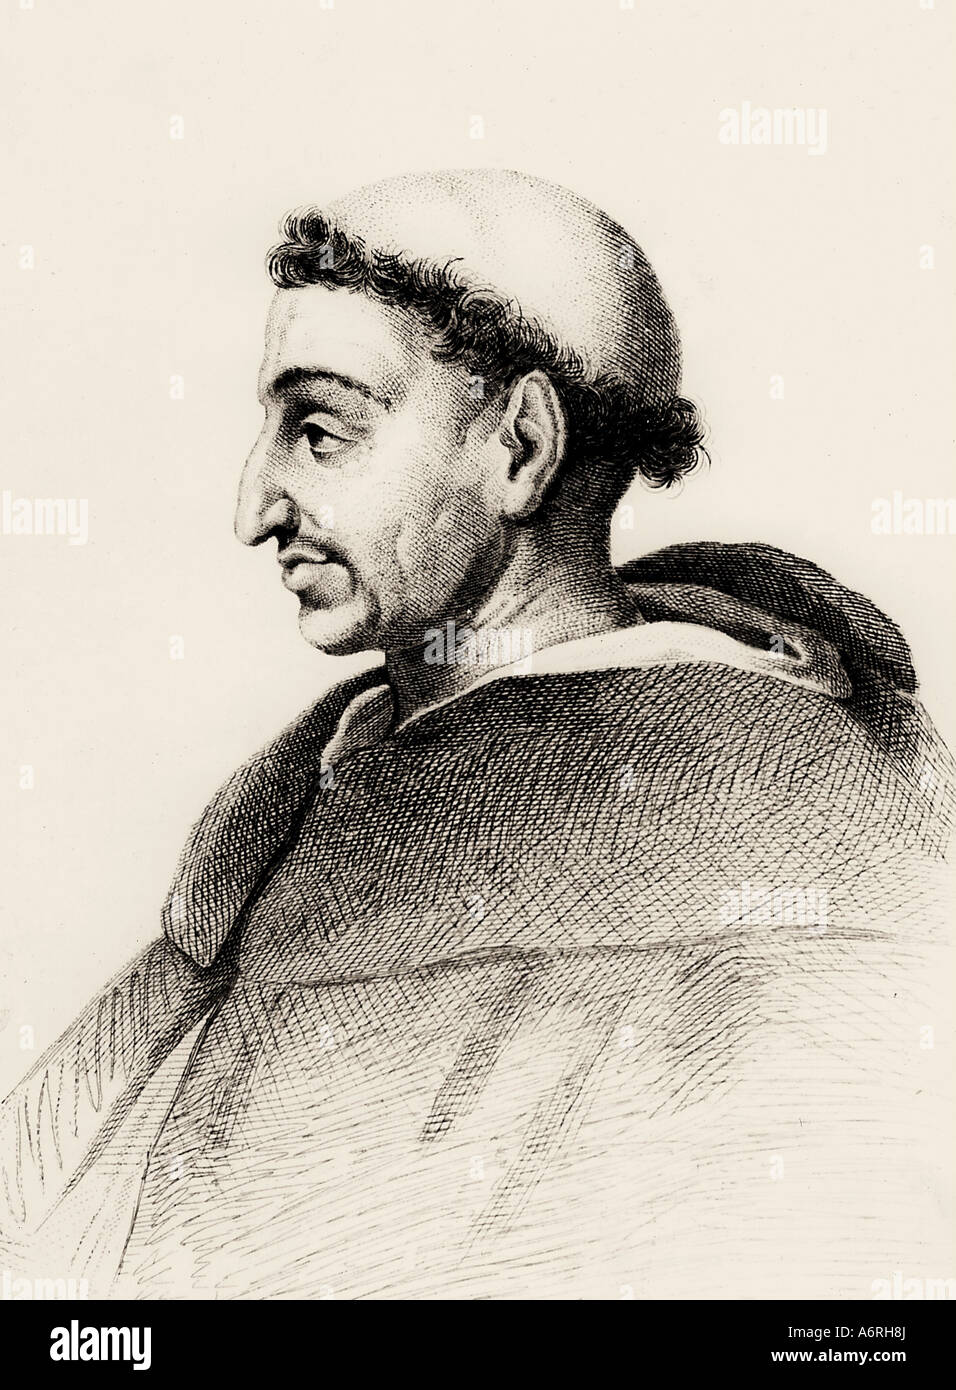 Savonarola, Girolamo, 21.9.1452 - 23.5.1498, italienischer Geistlicher, Porträt, nach dem Stich, 18. Jahrhundert, Tonsura, tonsure, Refor Stockfoto